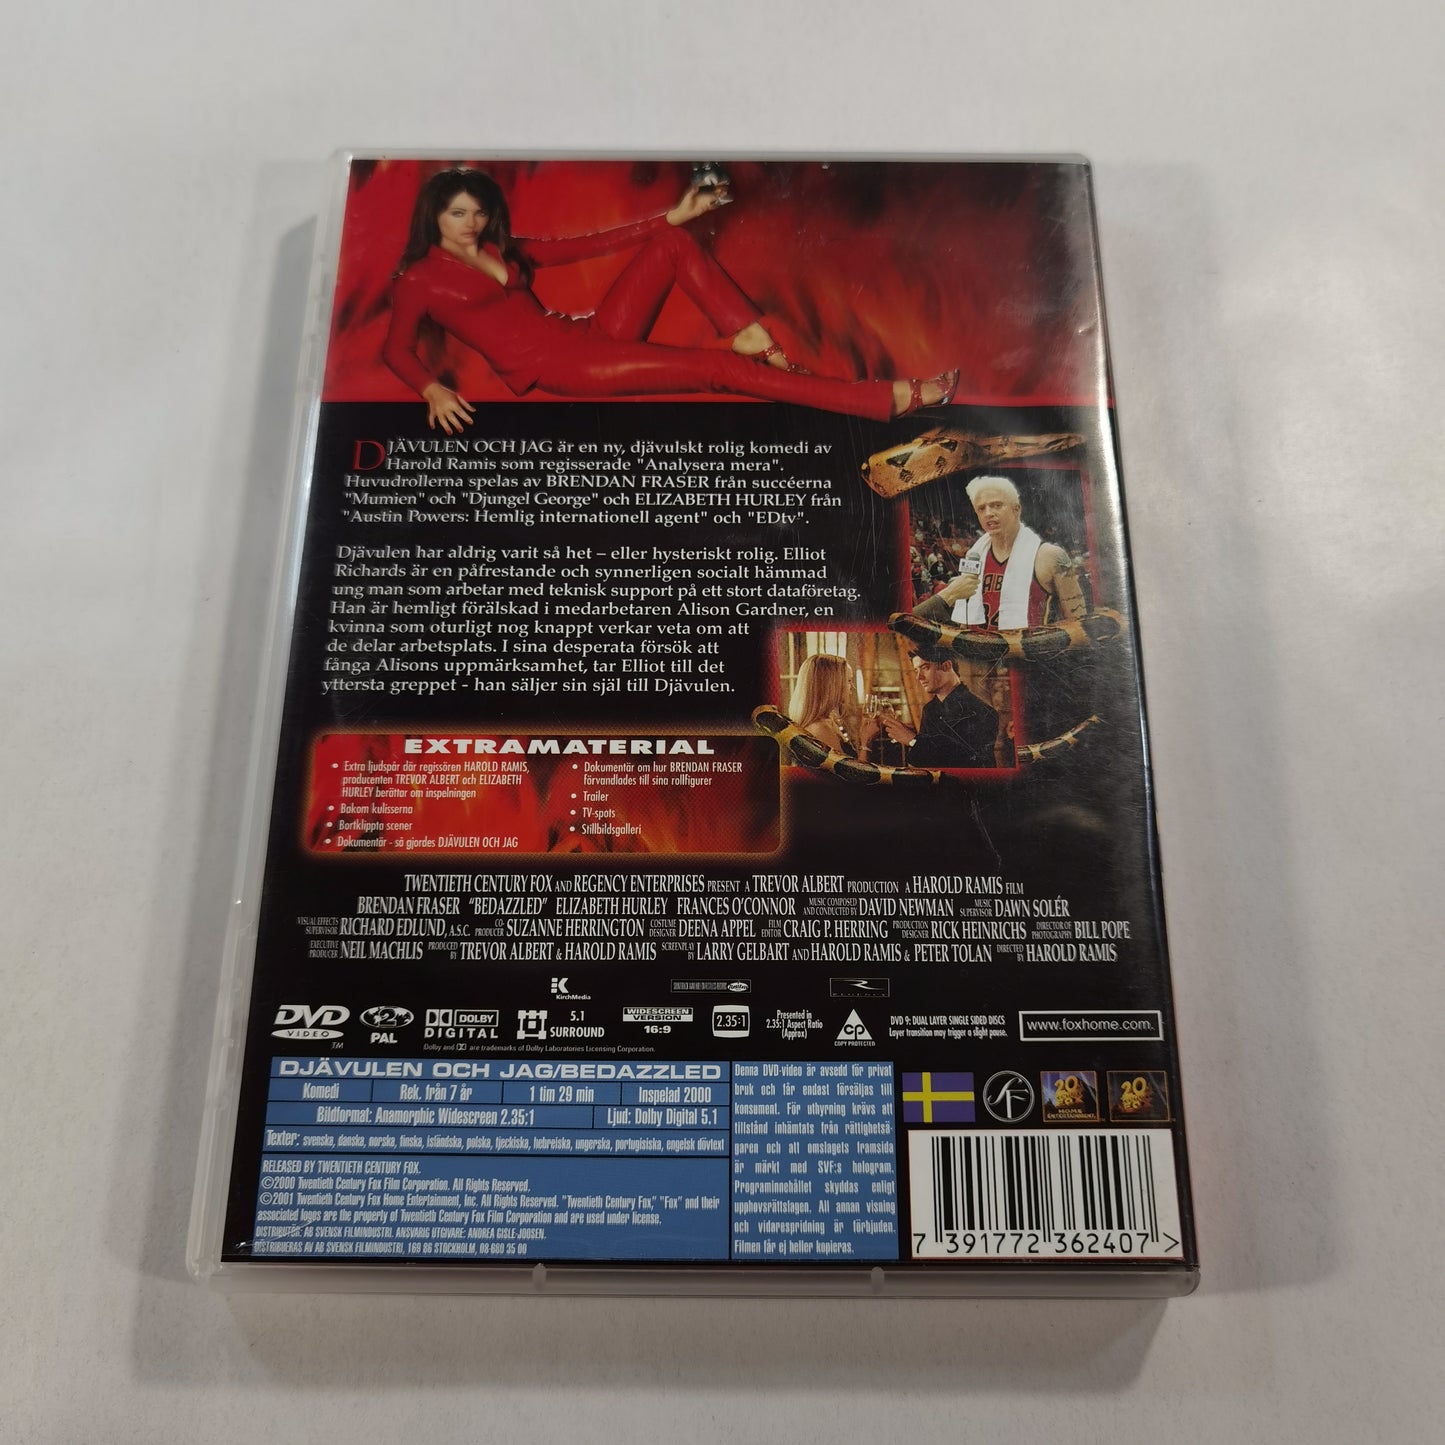 Bedazzled ( Djävulen Och Jag ) (2000) - DVD SE 2001 Special Edition